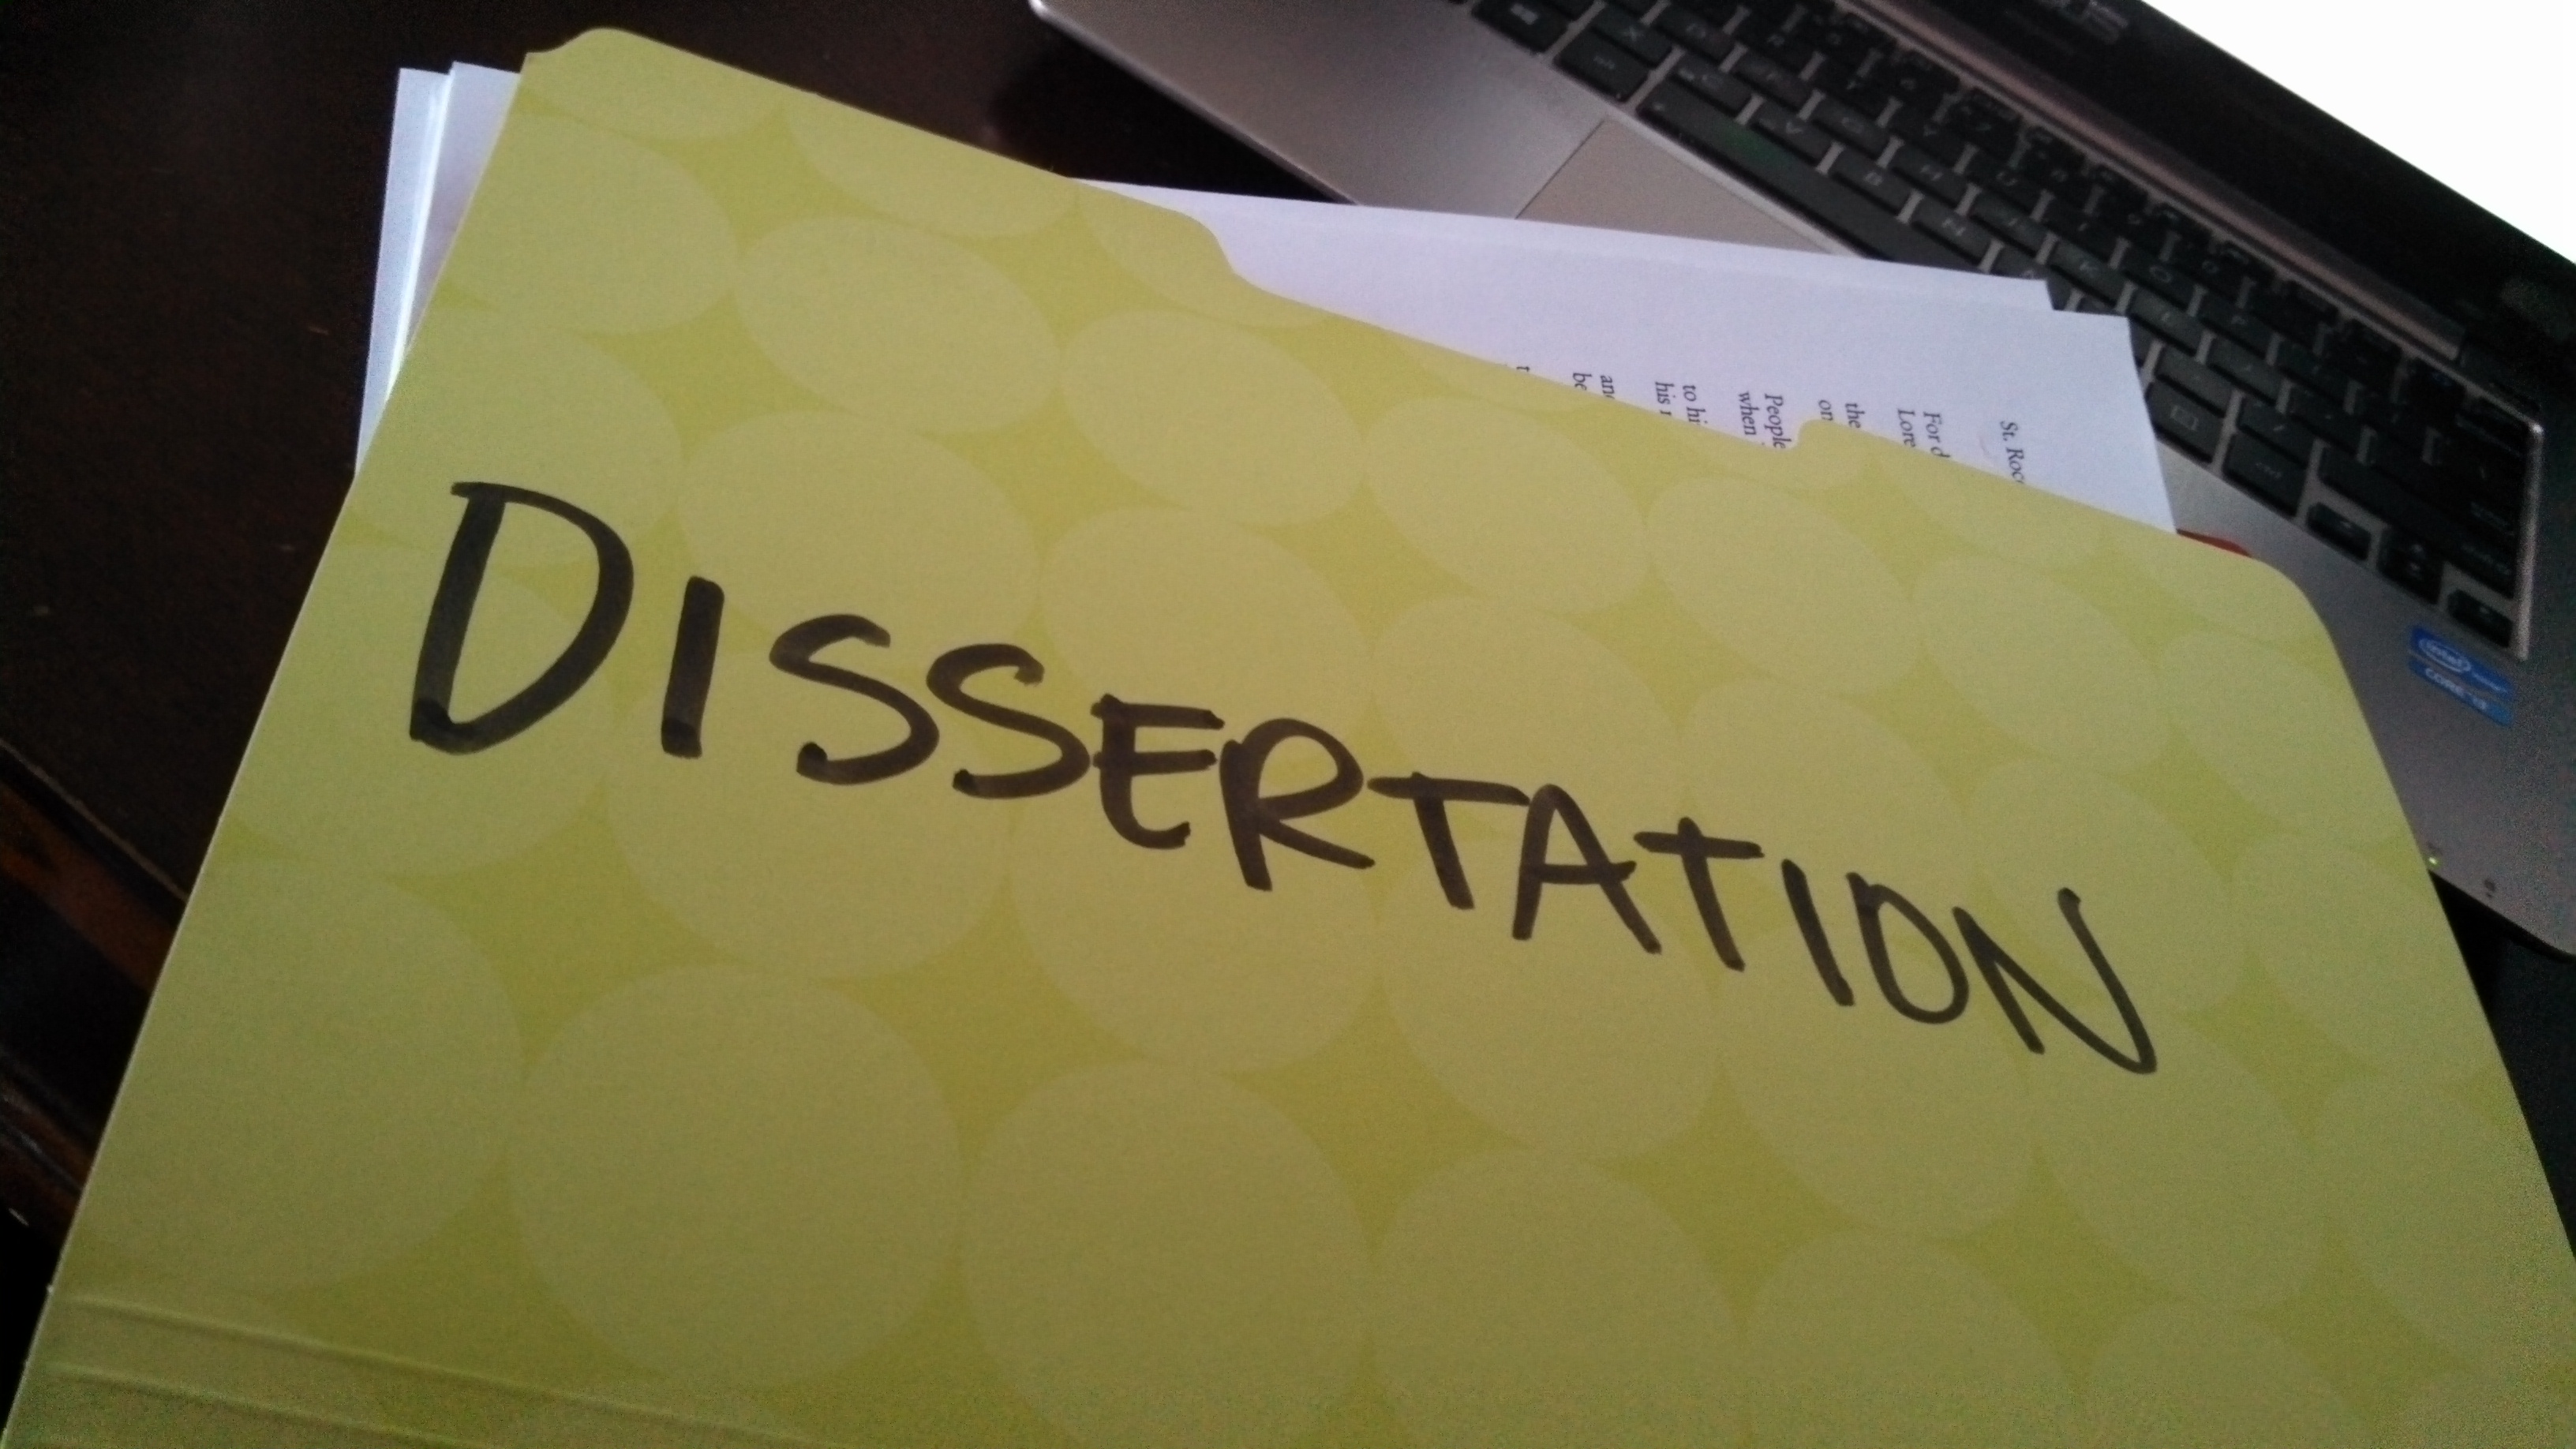 Doctoral dissertation